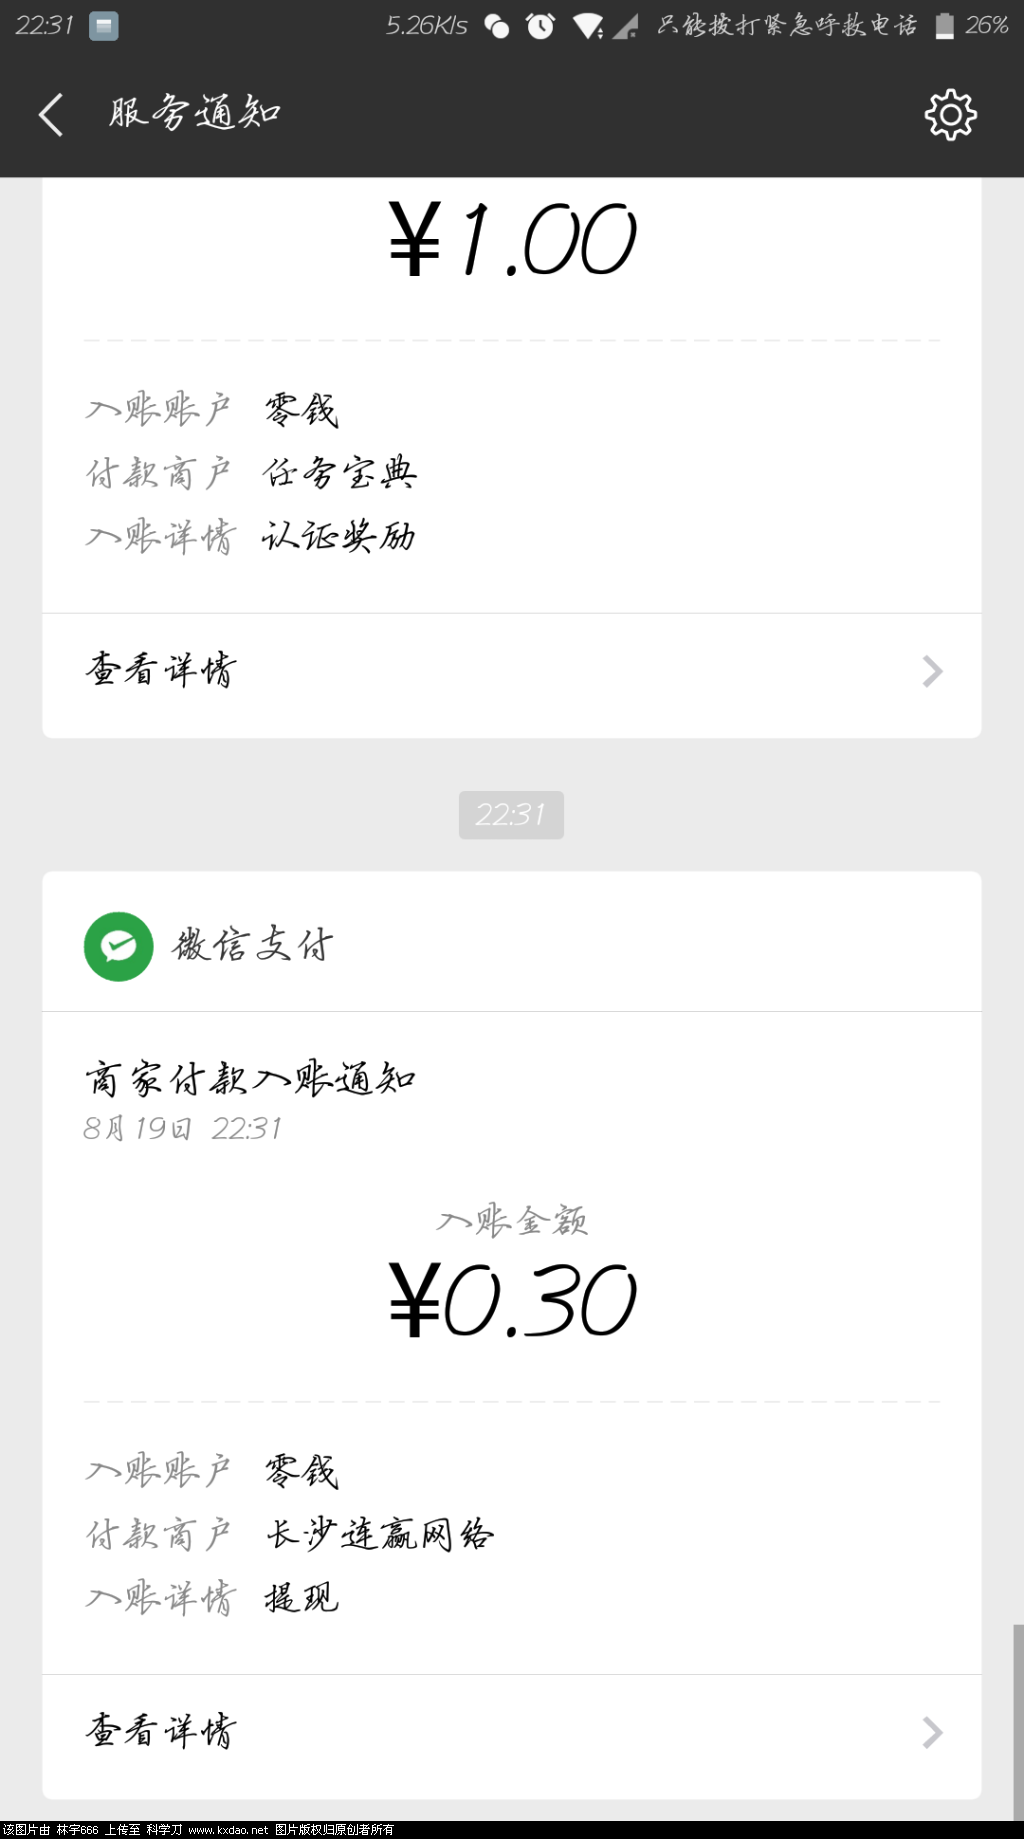 Screenshot_2018-08-19-22-31-26-956_com.tencent.mm.png